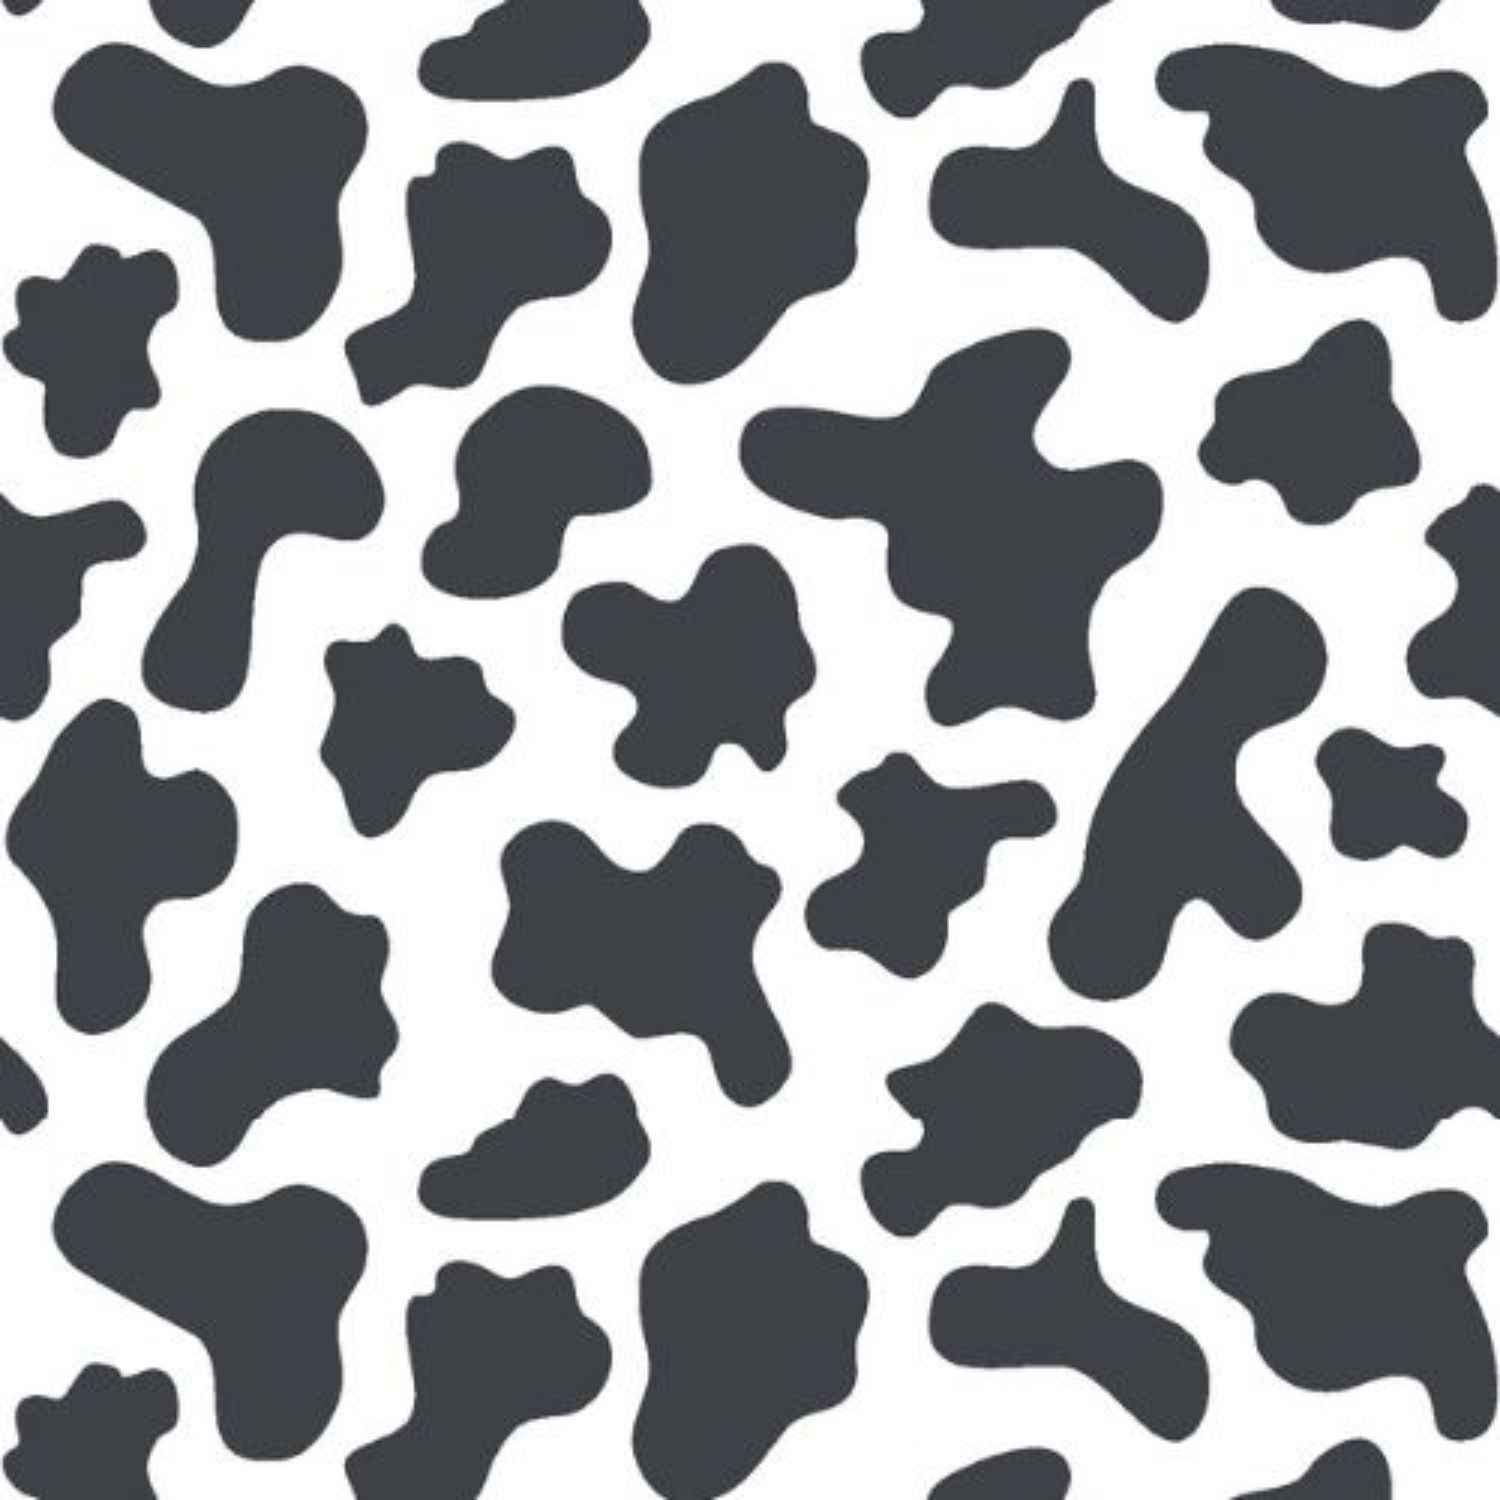 mucca-copritutto-telo-arredo-tuttofare-pezzato-mucche-bianco-nero-pattern